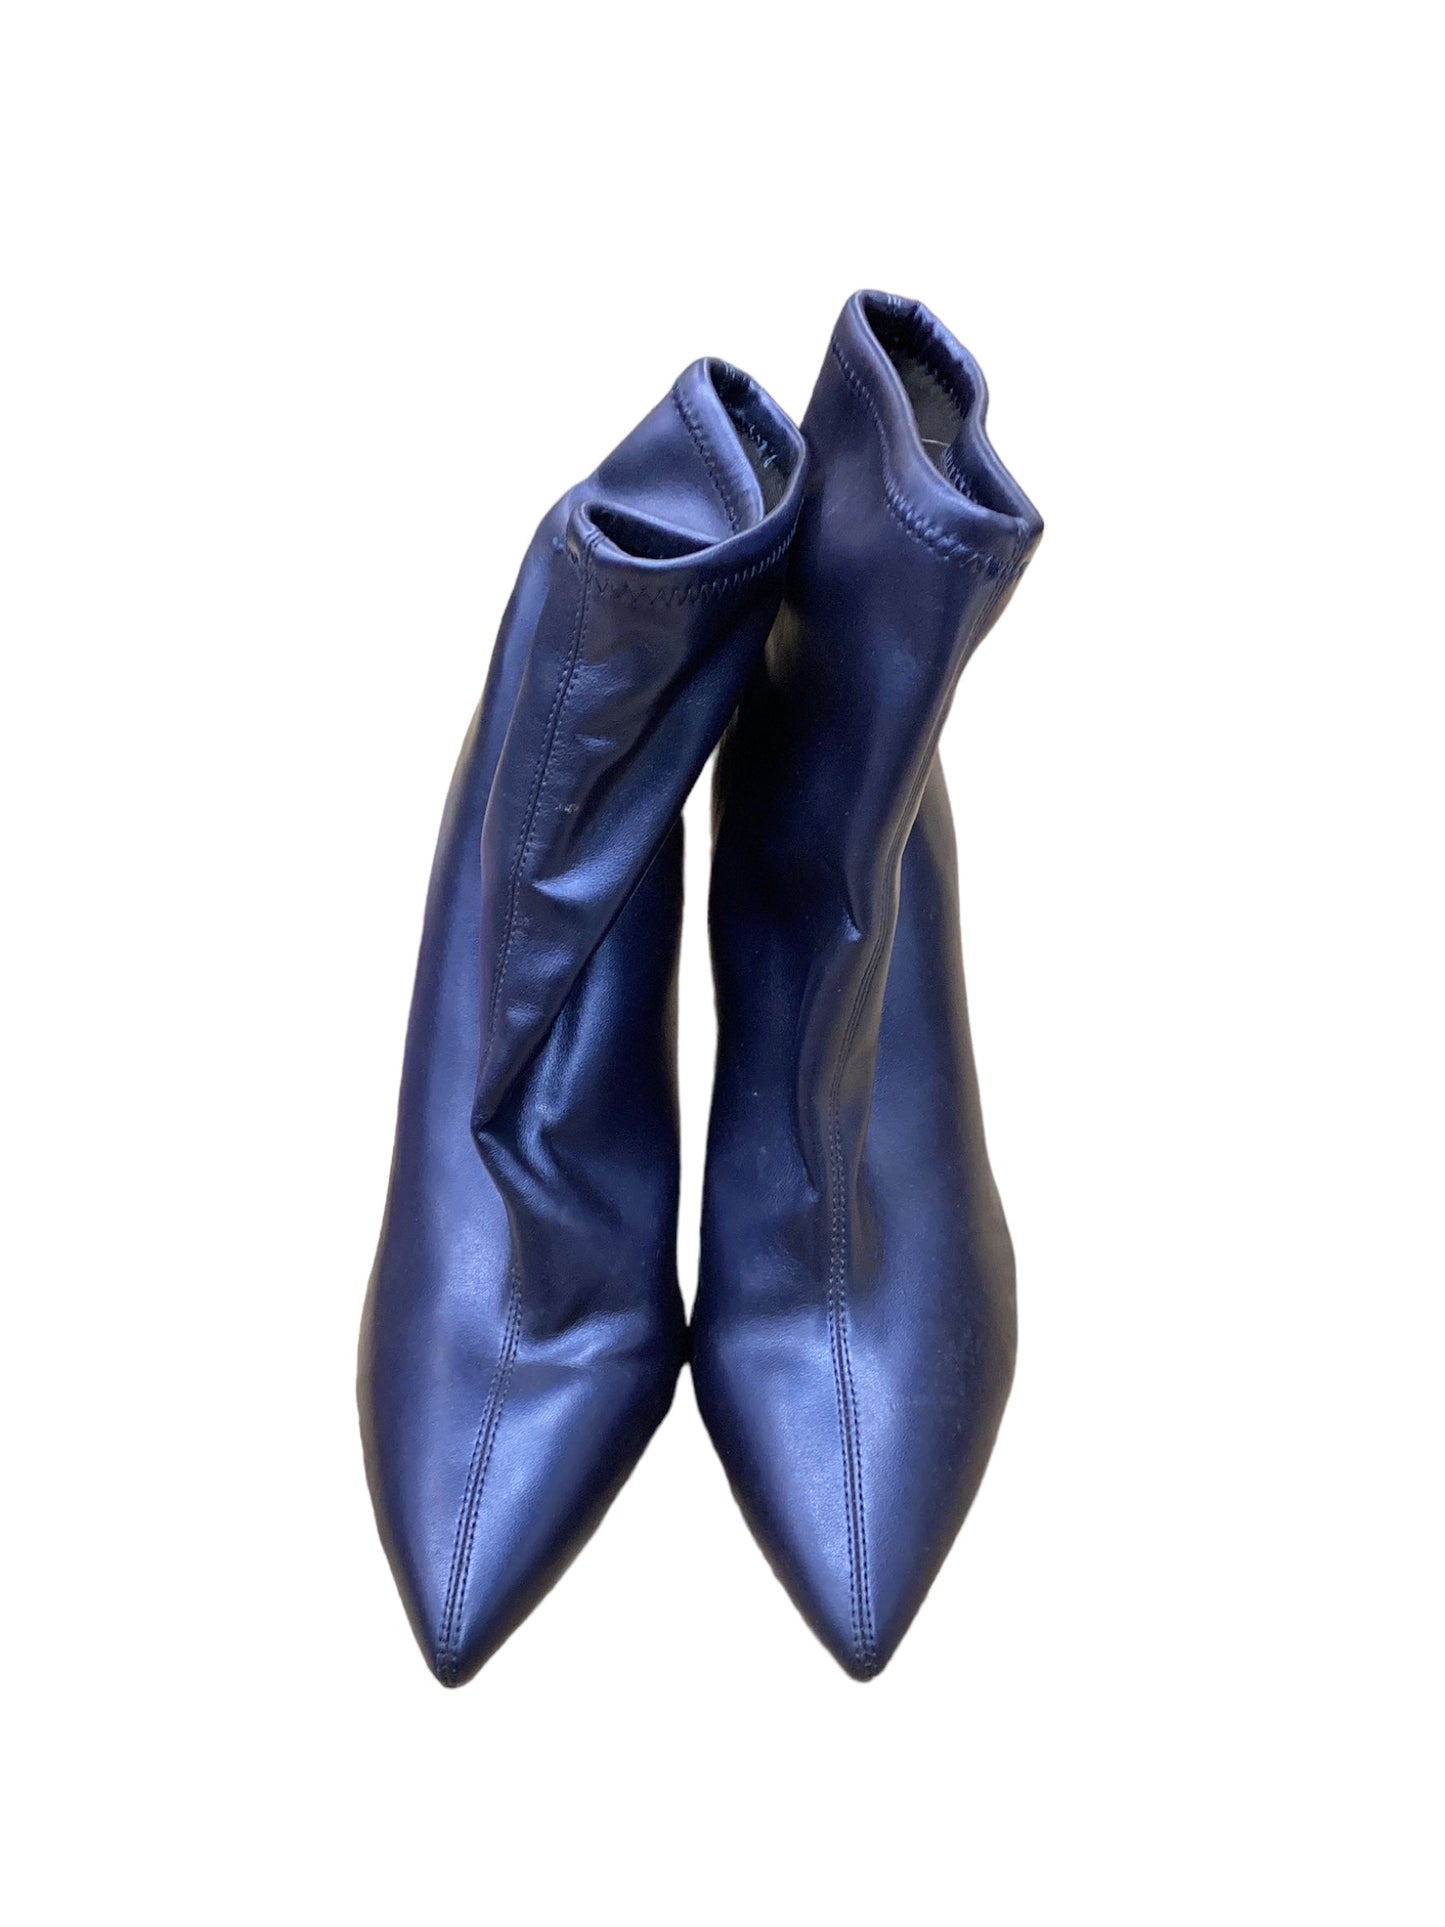 Blue Shoes Heels Stiletto Jessica Simpson, Size 10